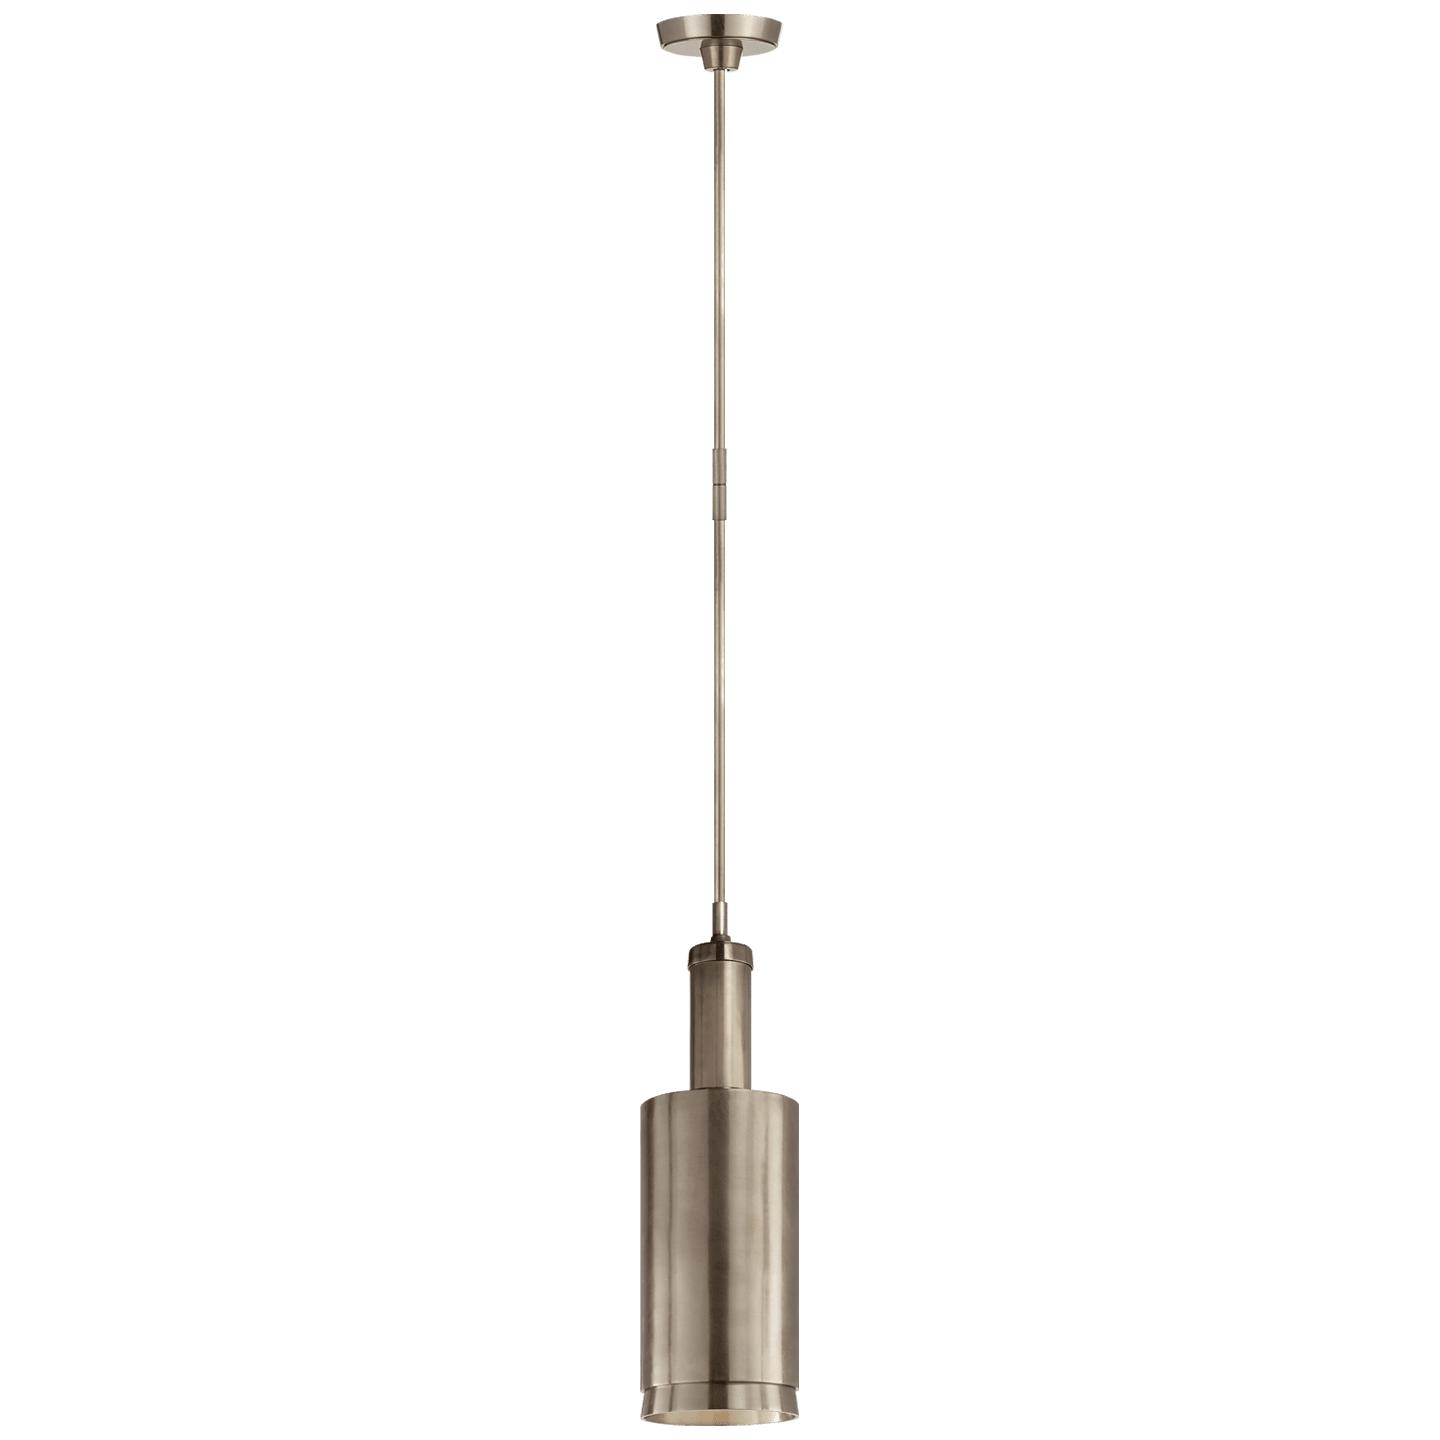 Купить Подвесной светильник Anders Large Cylindrical Pendant в интернет-магазине roooms.ru